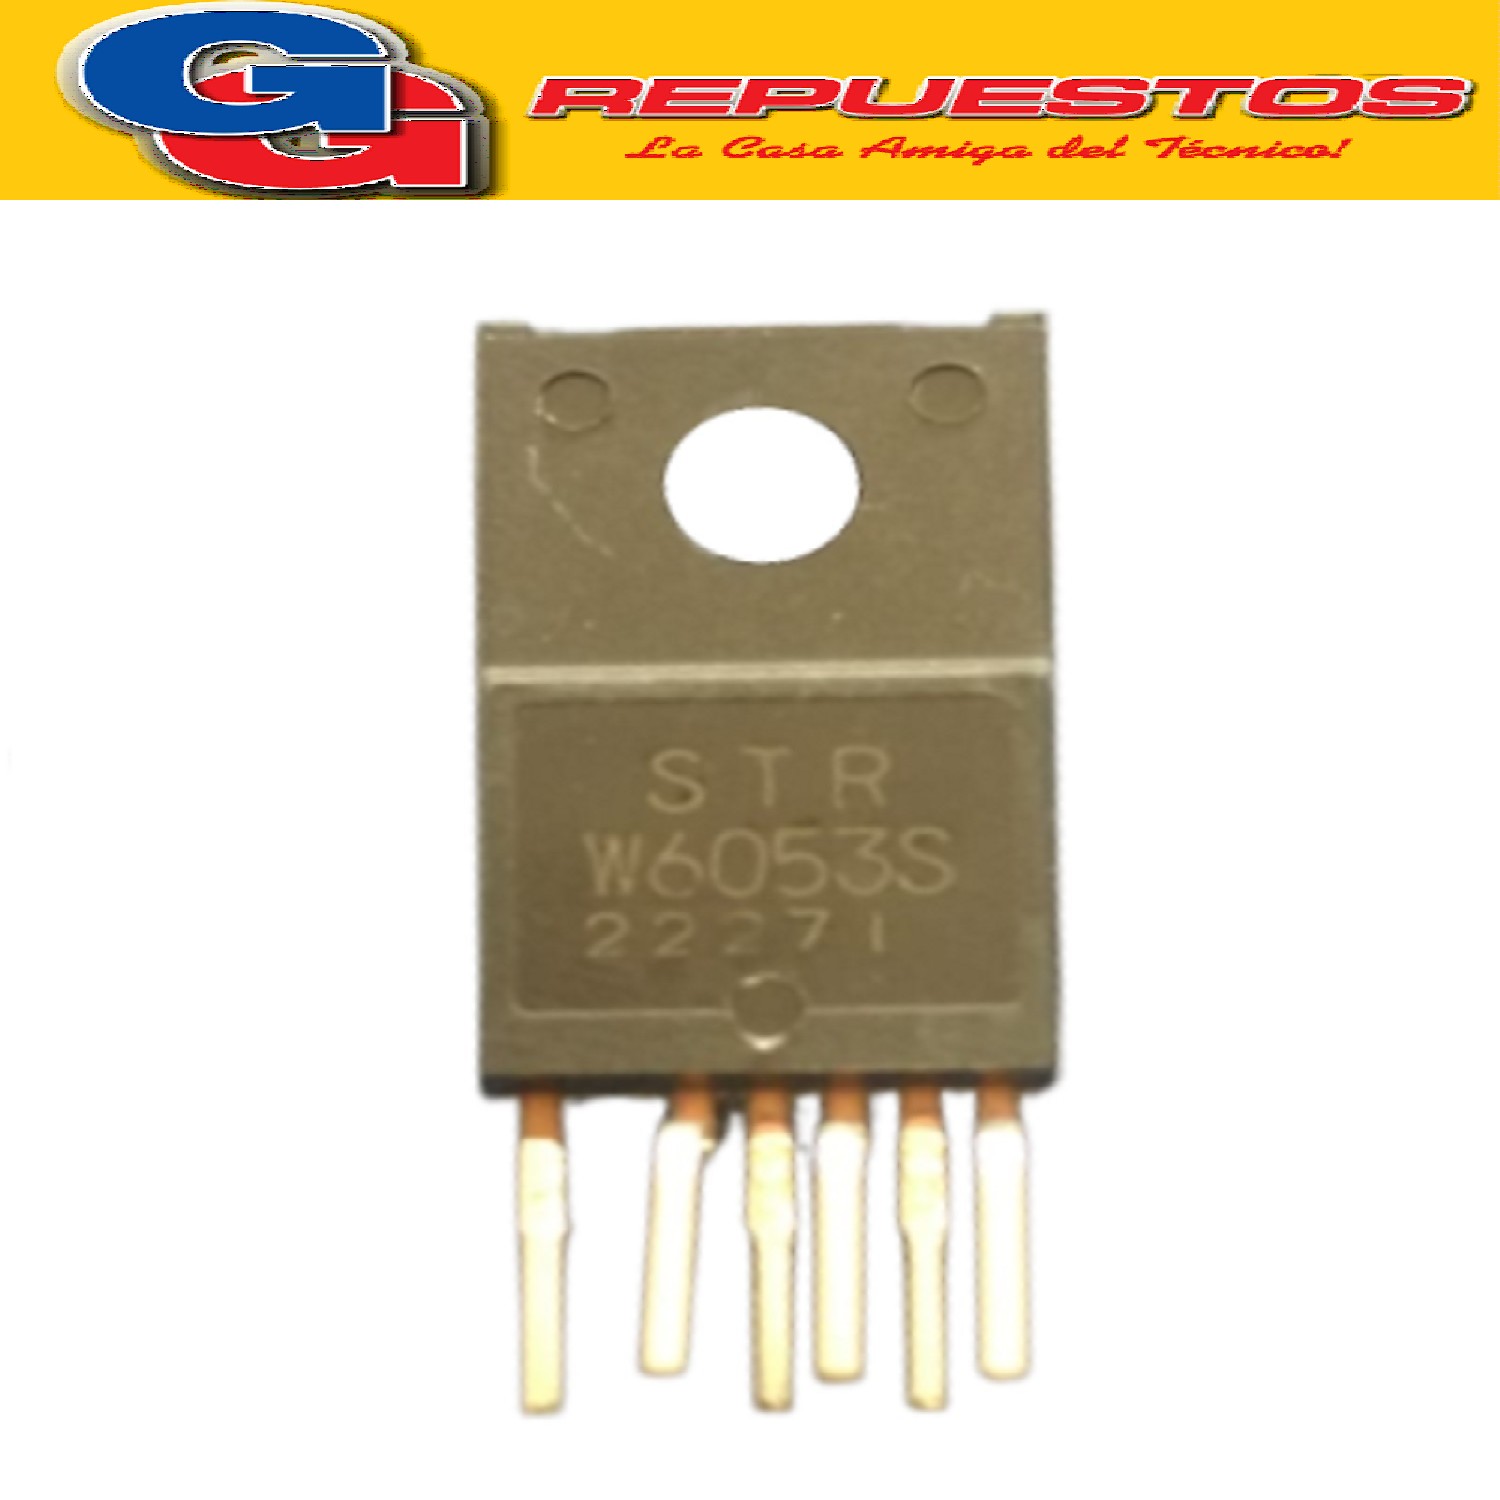 STRW6053SSK ORIGINAL CIRCUITO INTEGRADO MOSFET (650V/1.9R/90 W)